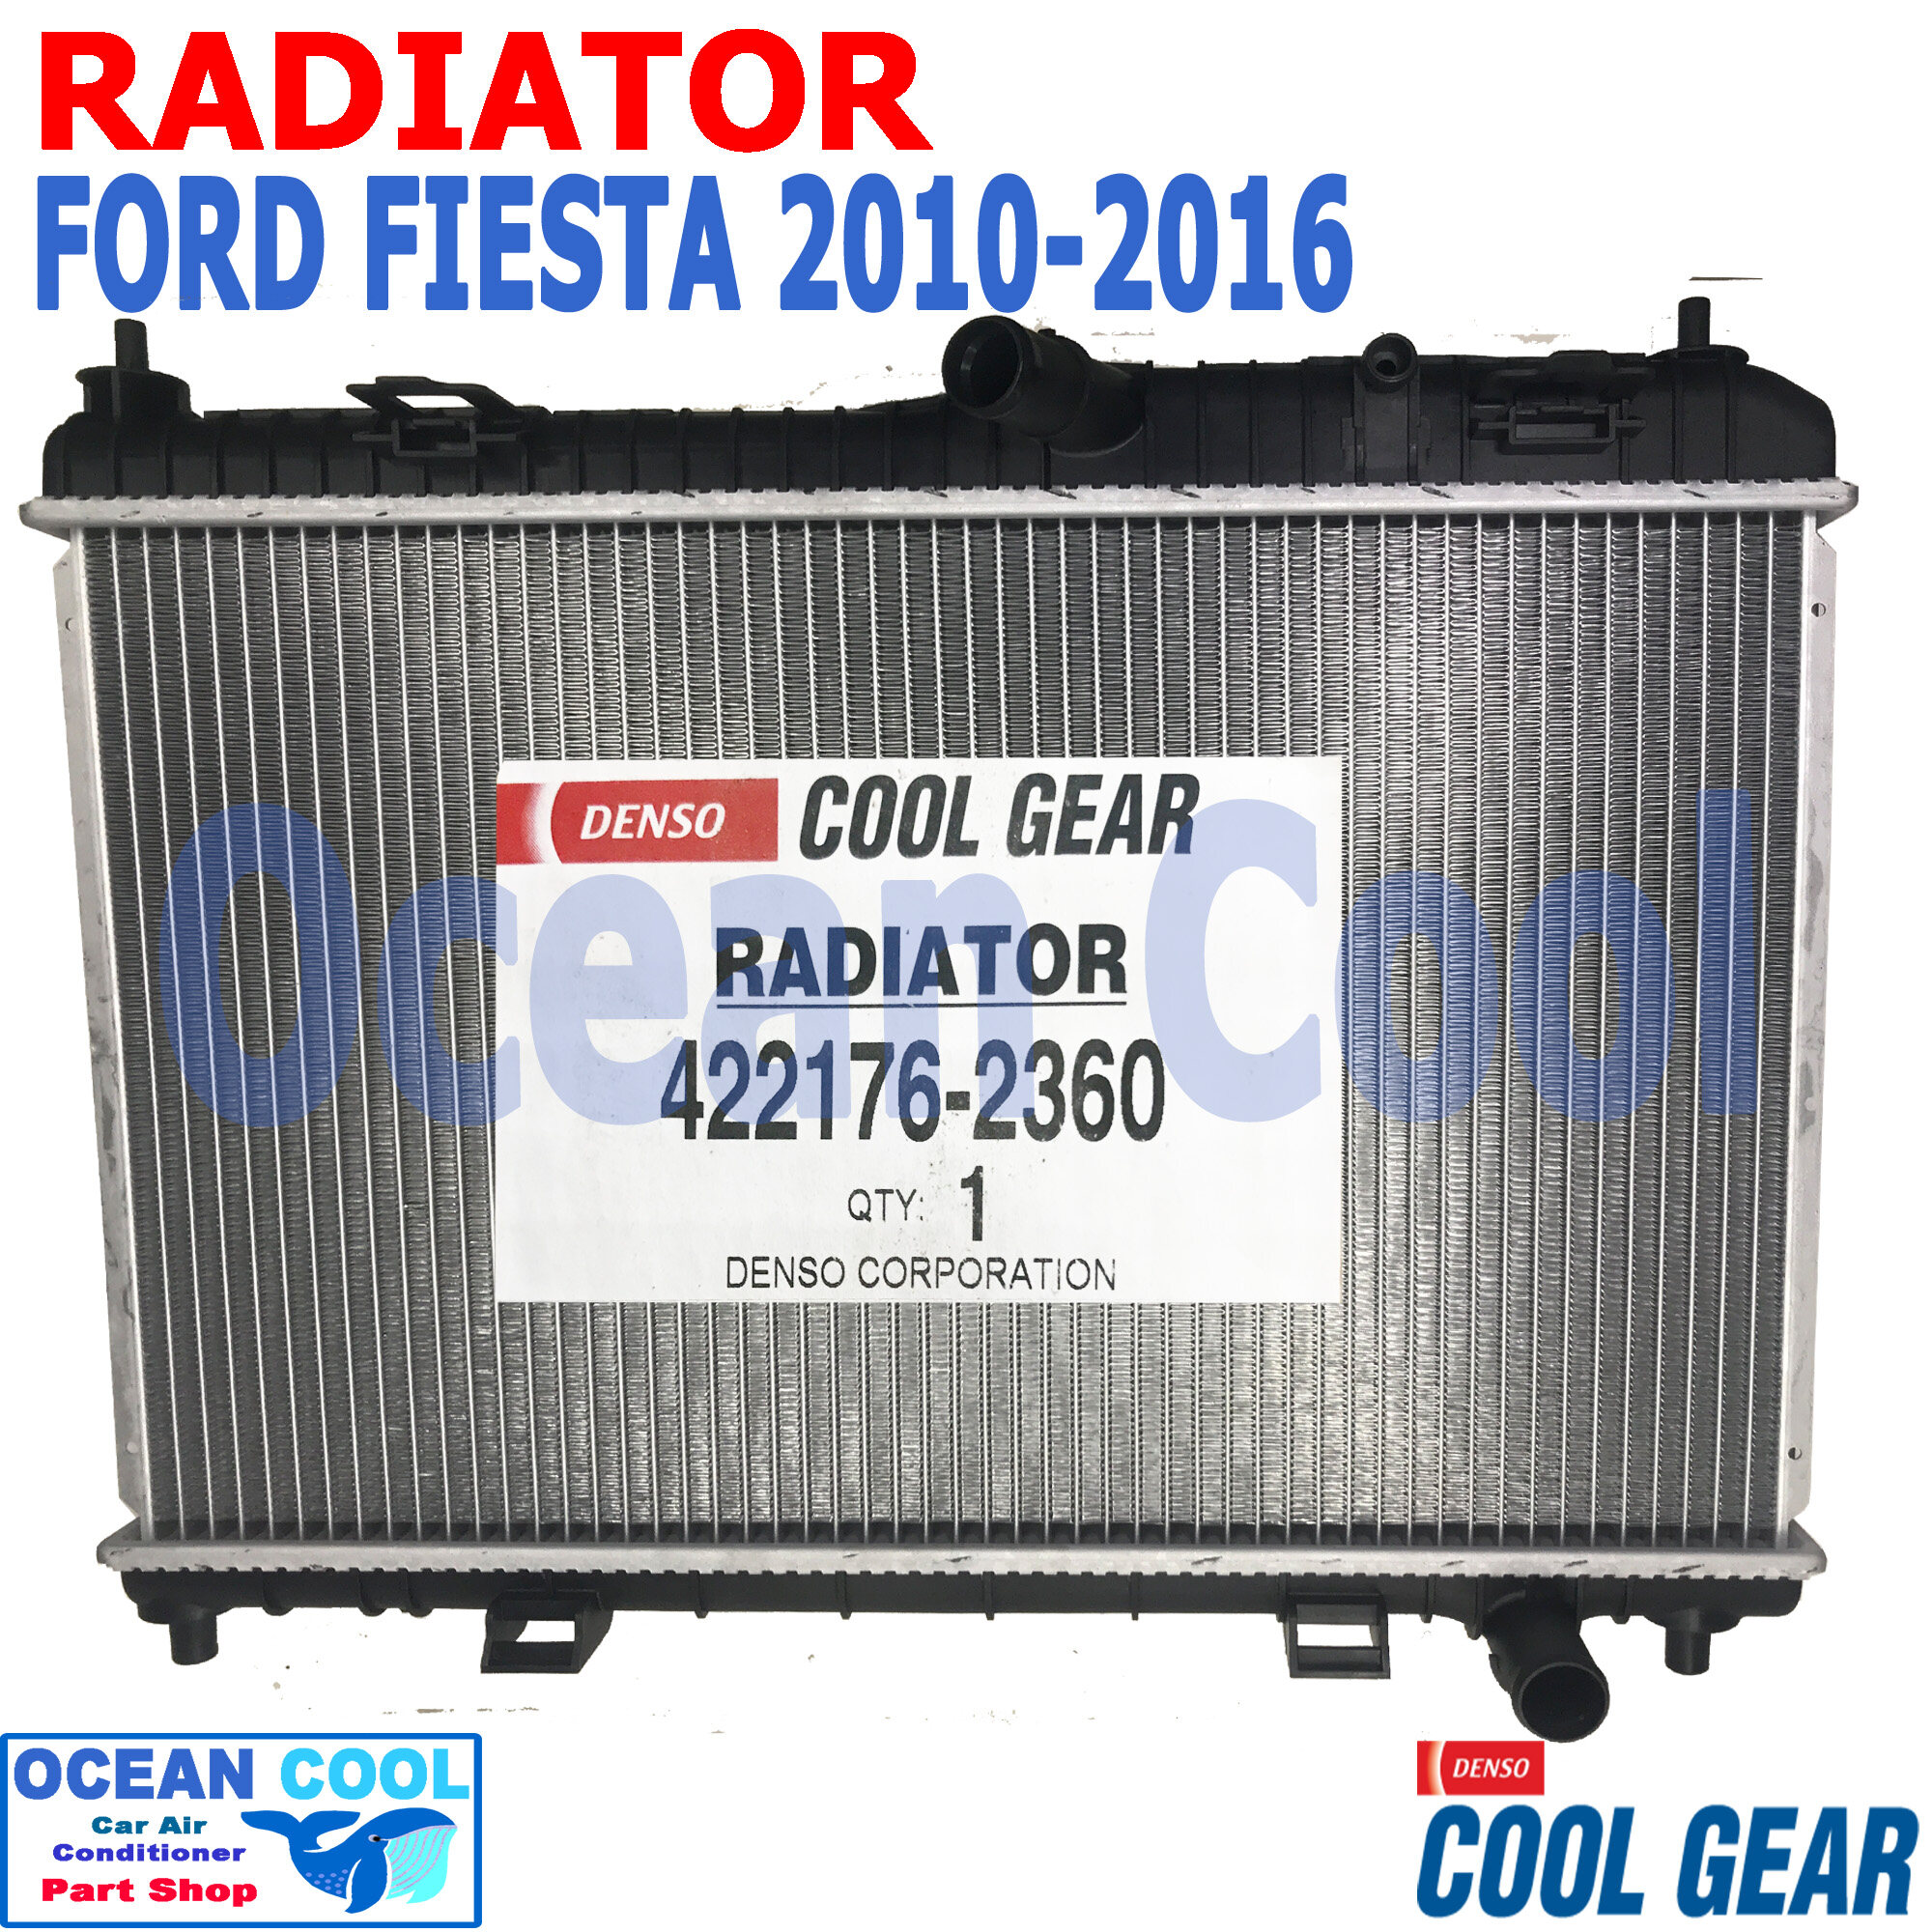 หม้อน้ำ ฟอร์ด เฟียสต้า ปี 2010 - 2016 เครื่อง 1.5 1.6 cc ออโต้ RD0047 Cool  Gear แท้ รหัส 422176-2360 RADIATOR FORD FIESTA AUTO อะไหล่ รถยนต์ |  Lazada.co.th